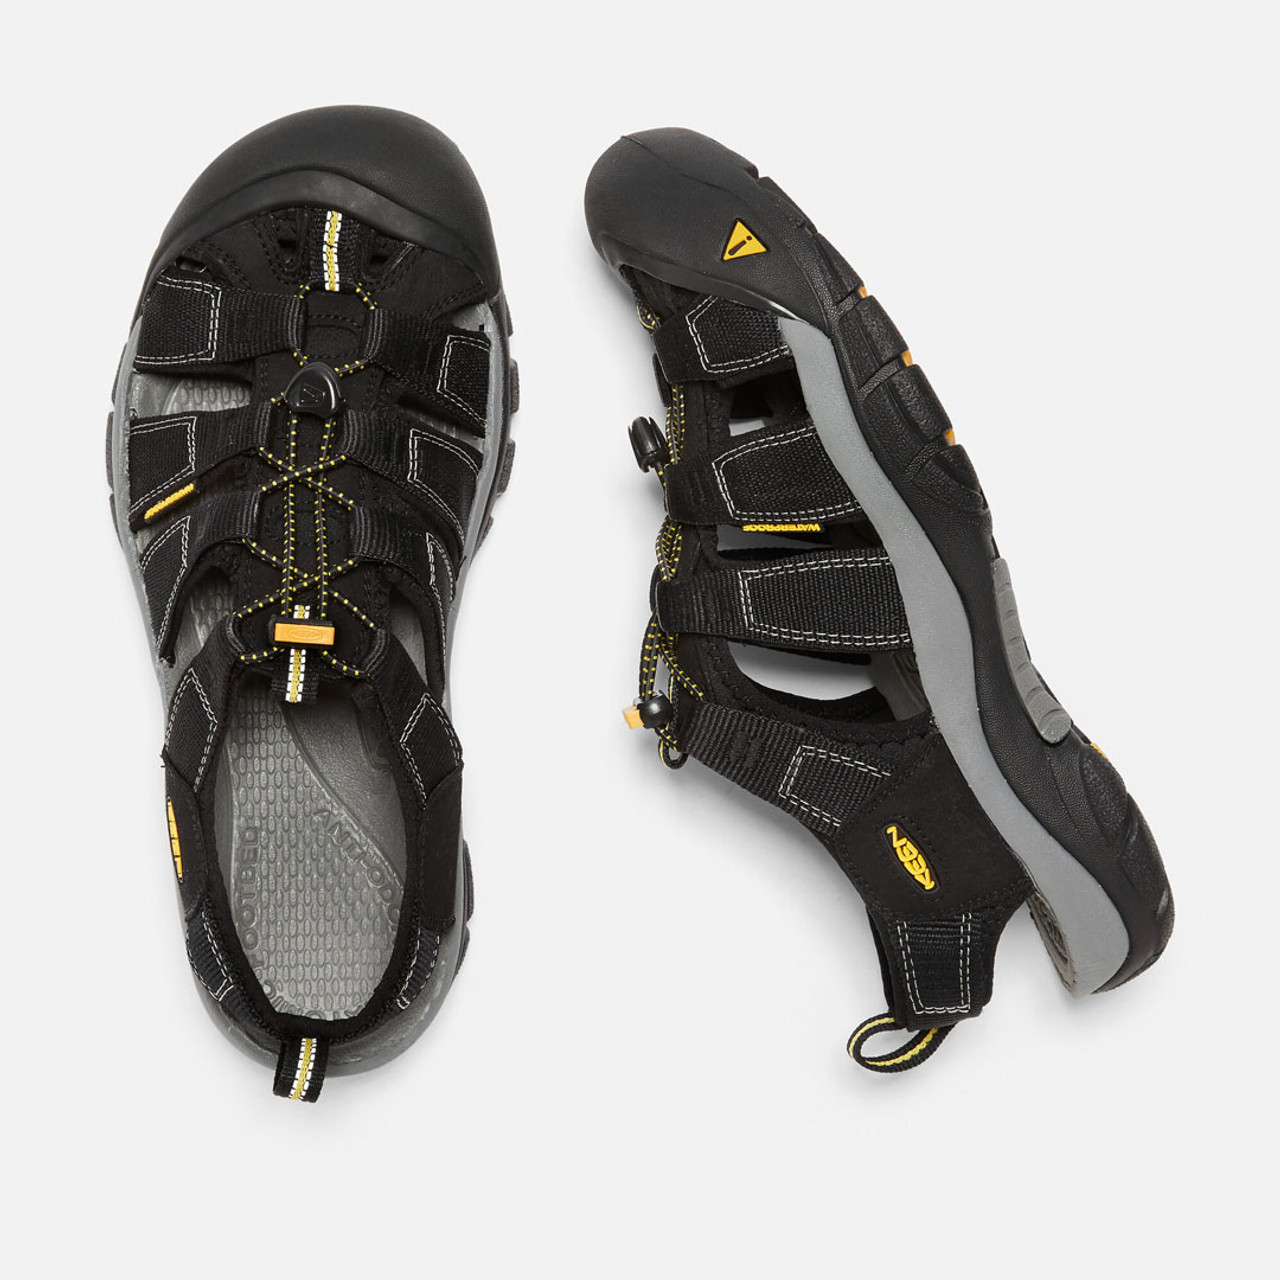 Keen Keen Men's Newport H2 Sandals - Black $ 119.99 | TYLER'S